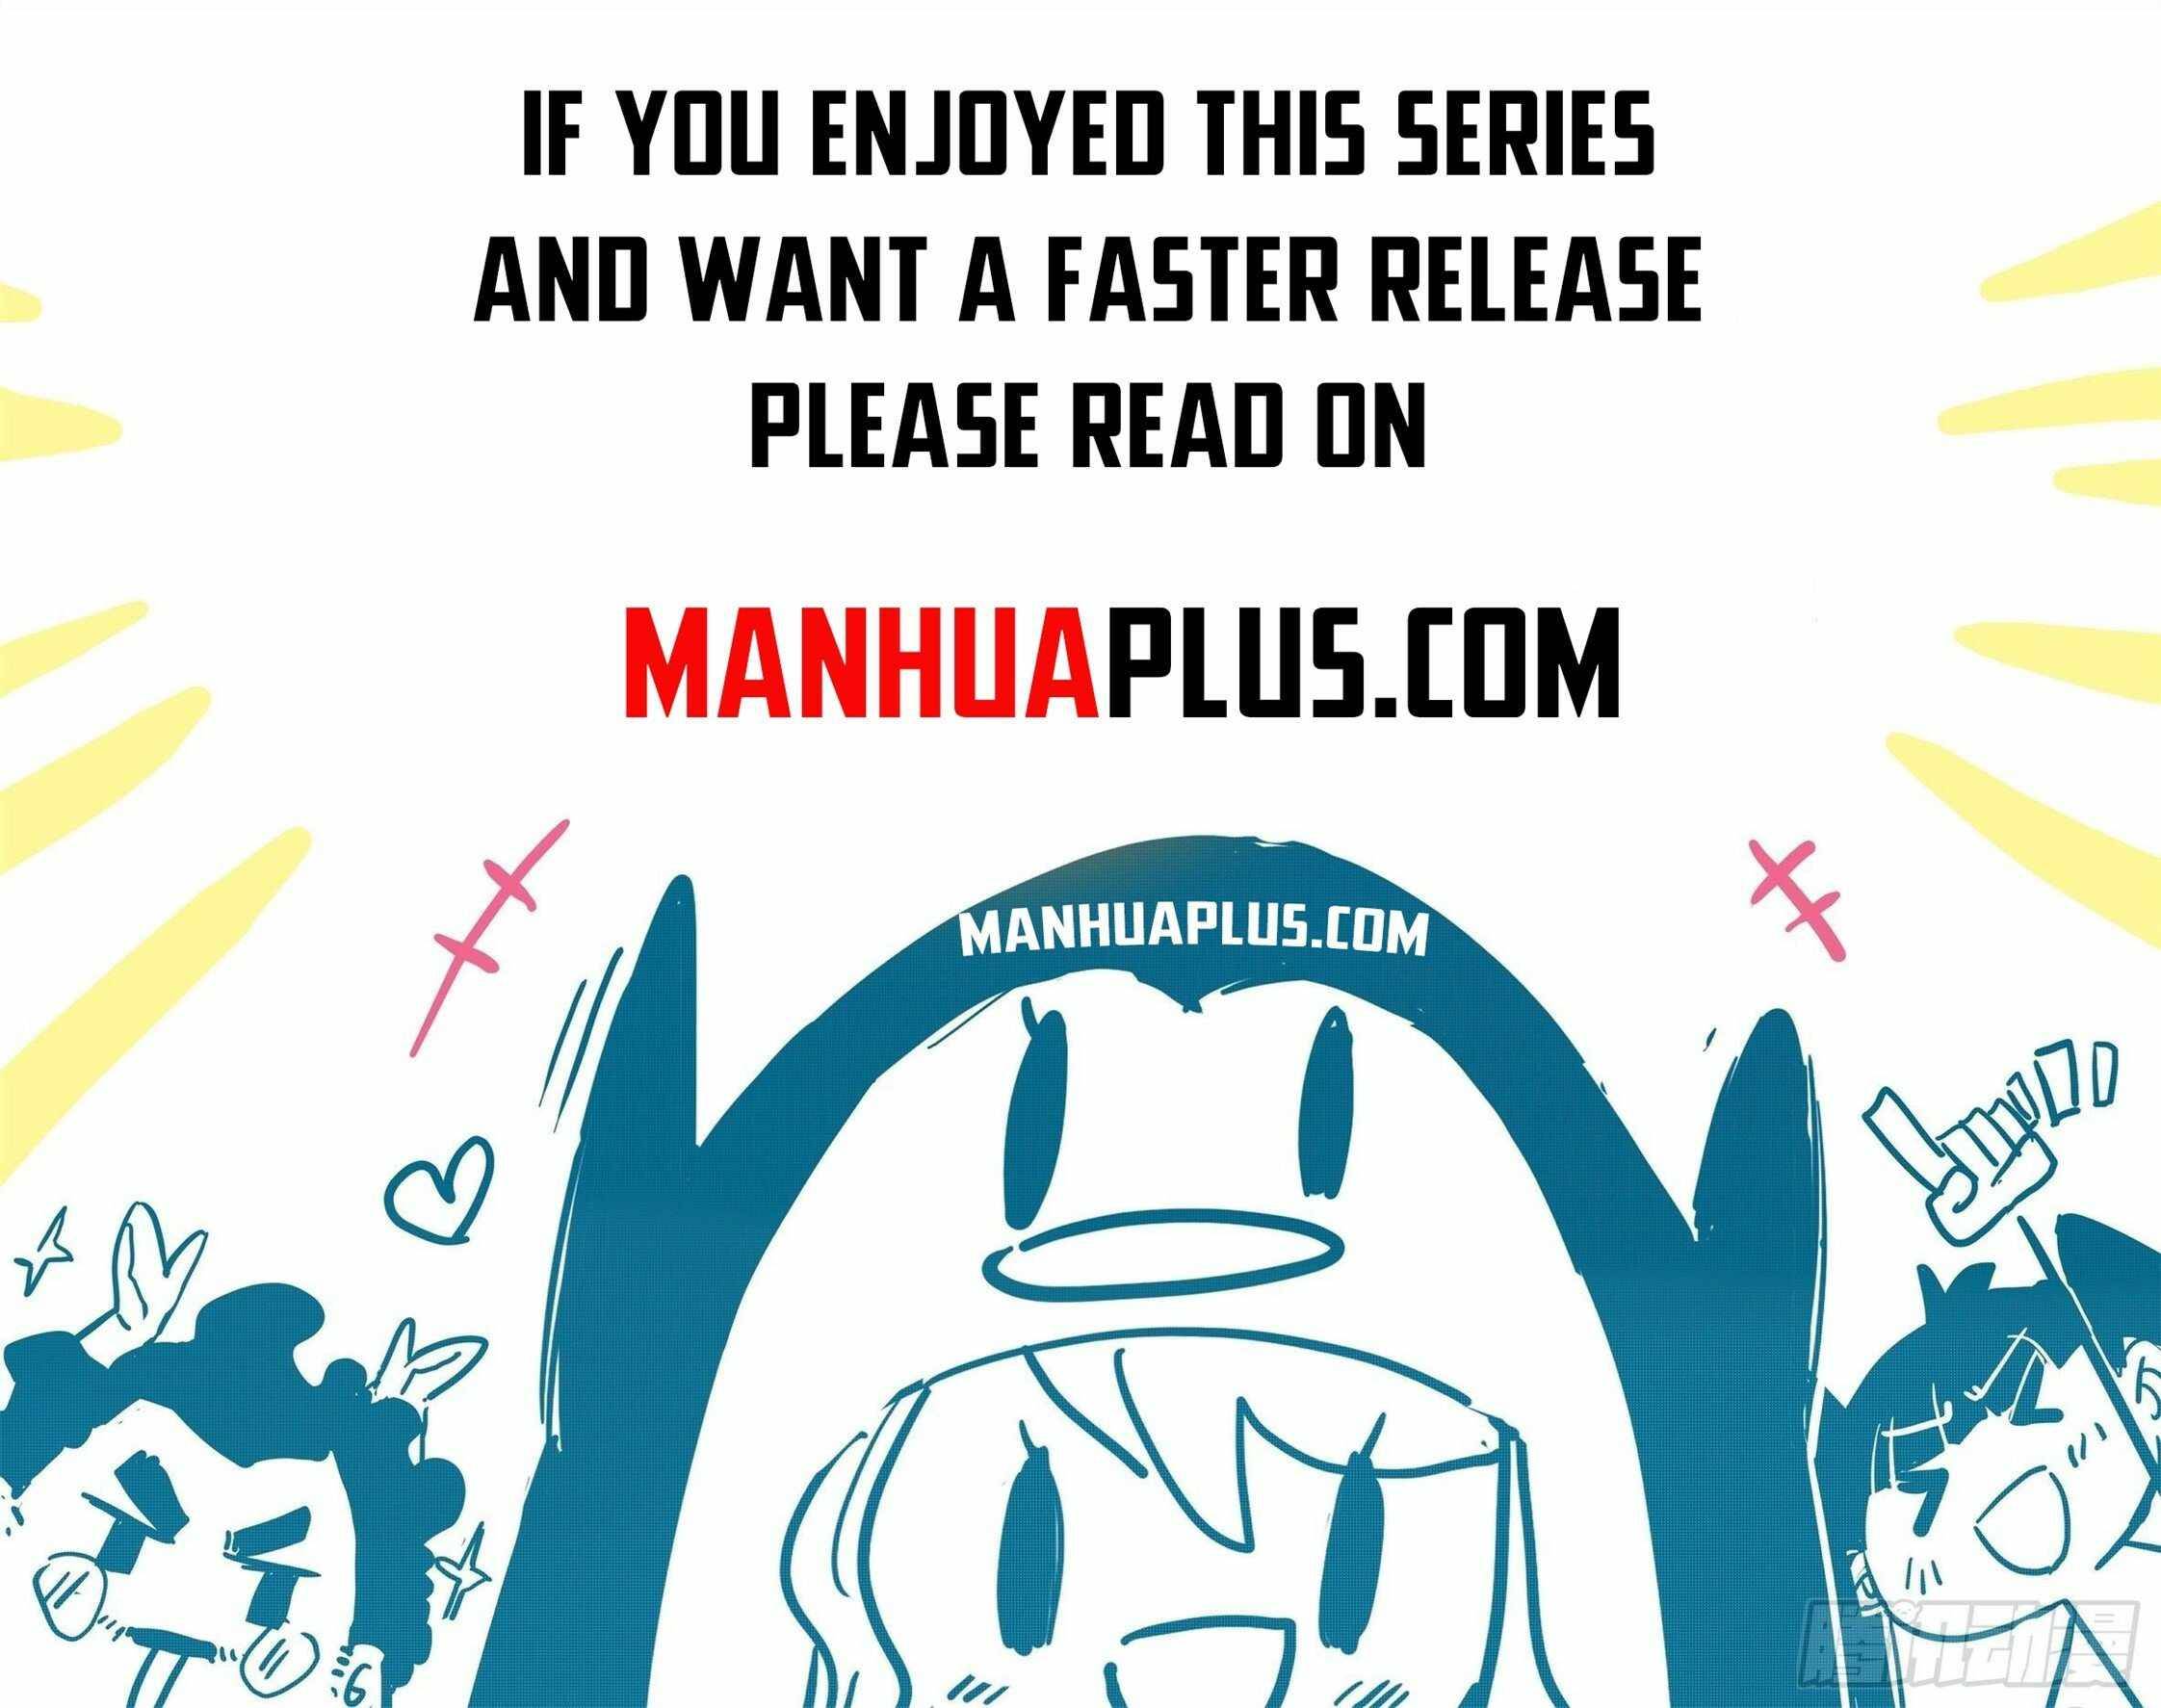 Read Yuan Zun Manga English [New Chapters] Online Free - MangaClash